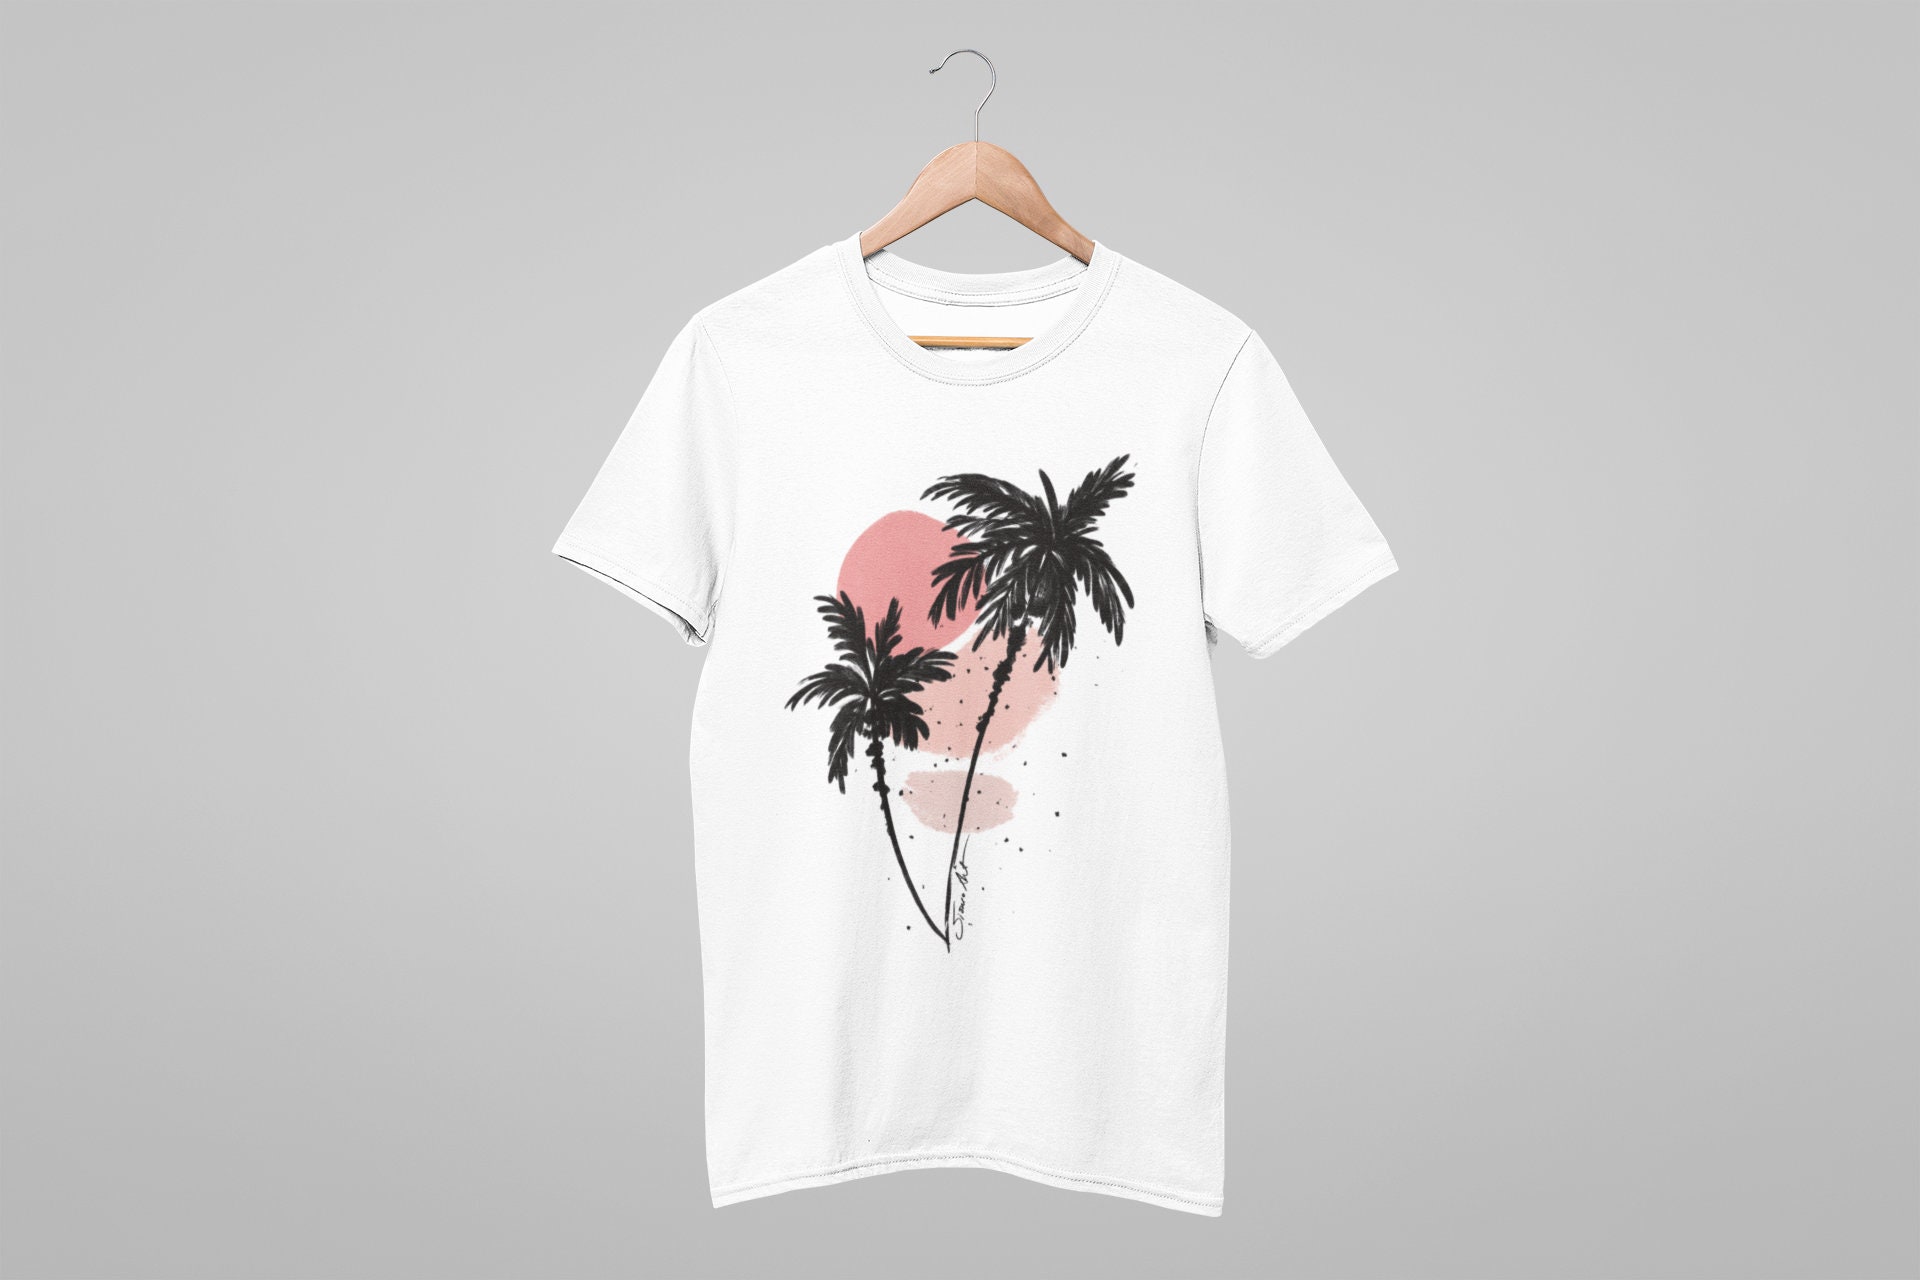 Boho Art T-shirt Spring T-shirt Summer T-shirt Art Tee | Etsy